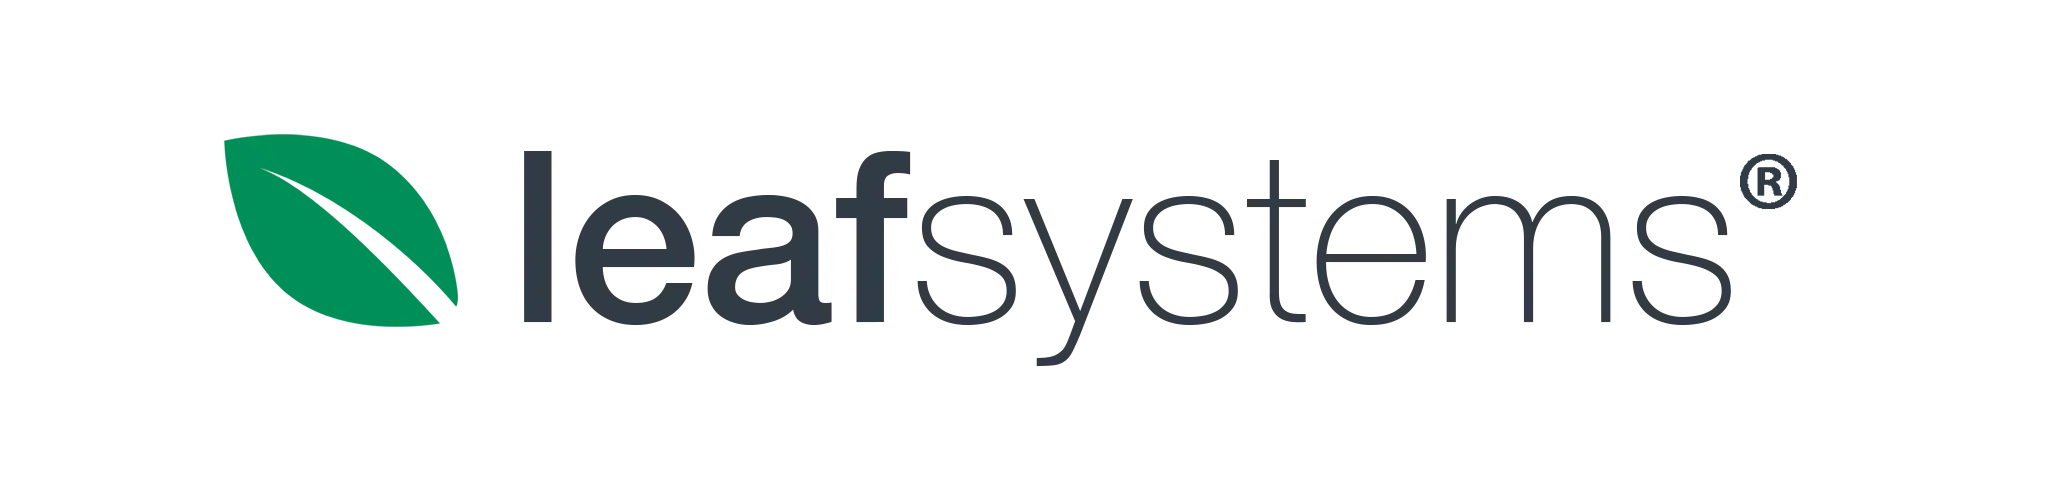 leafsystems-logo-farbig